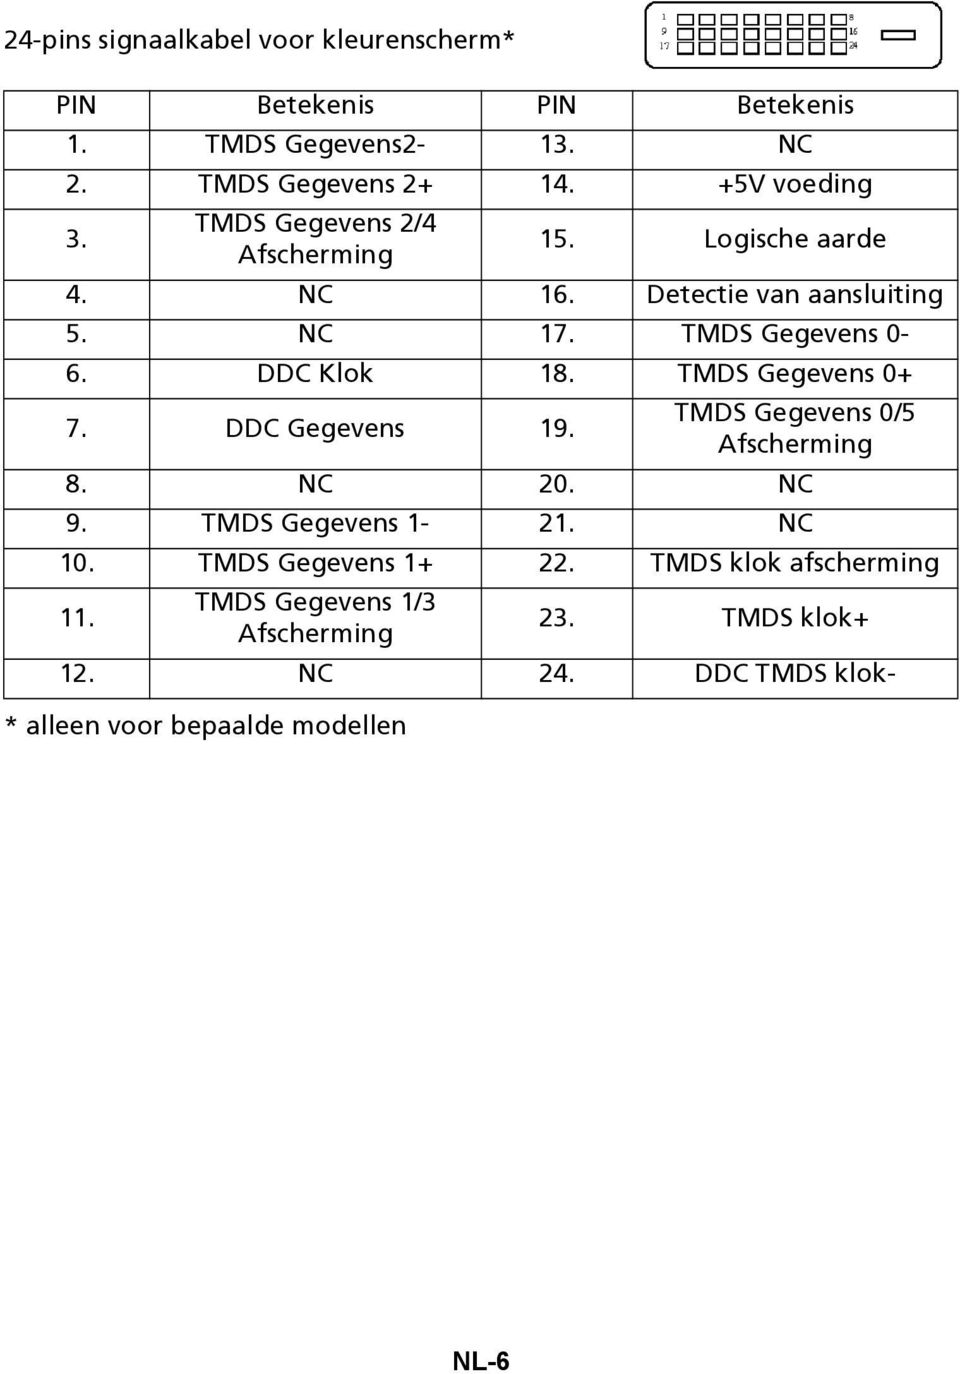 DDC Klok 18. TMDS Gegevens 0+ 7. DDC Gegevens 19. TMDS Gegevens 0/5 Afscherming 8. NC 20. NC 9. TMDS Gegevens 1-21. NC 10.